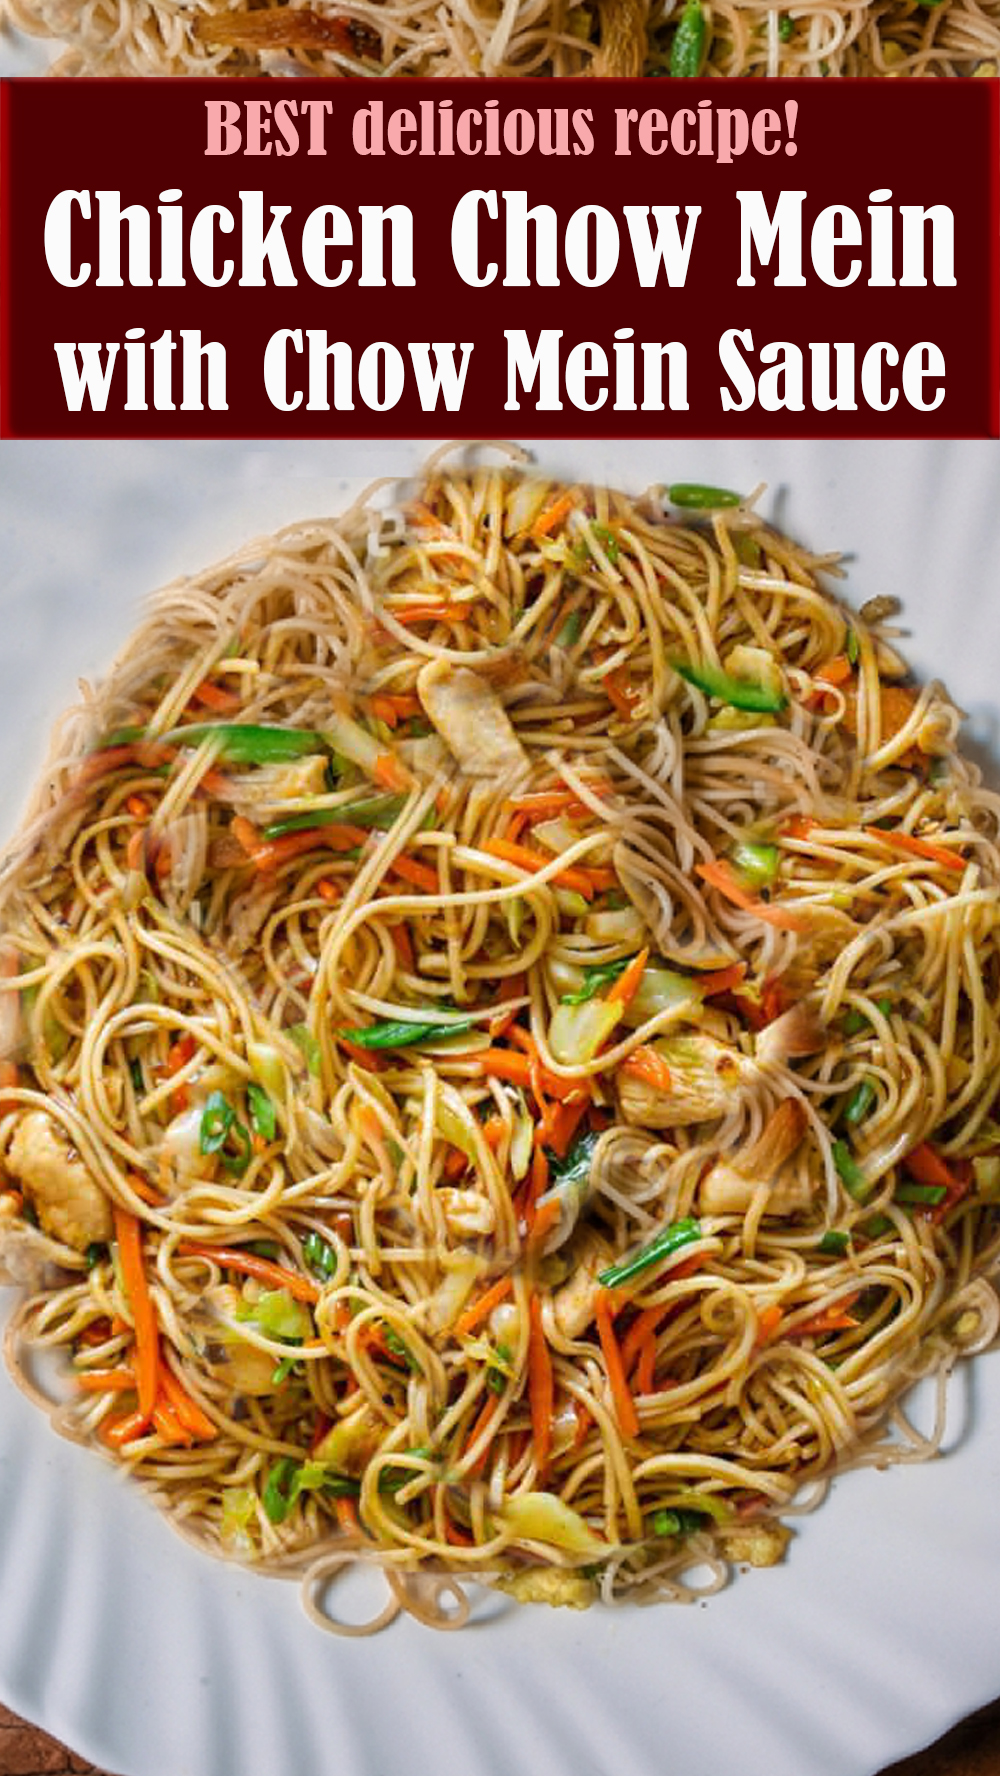 BEST Chicken Chow Mein with Chow Mein Sauce